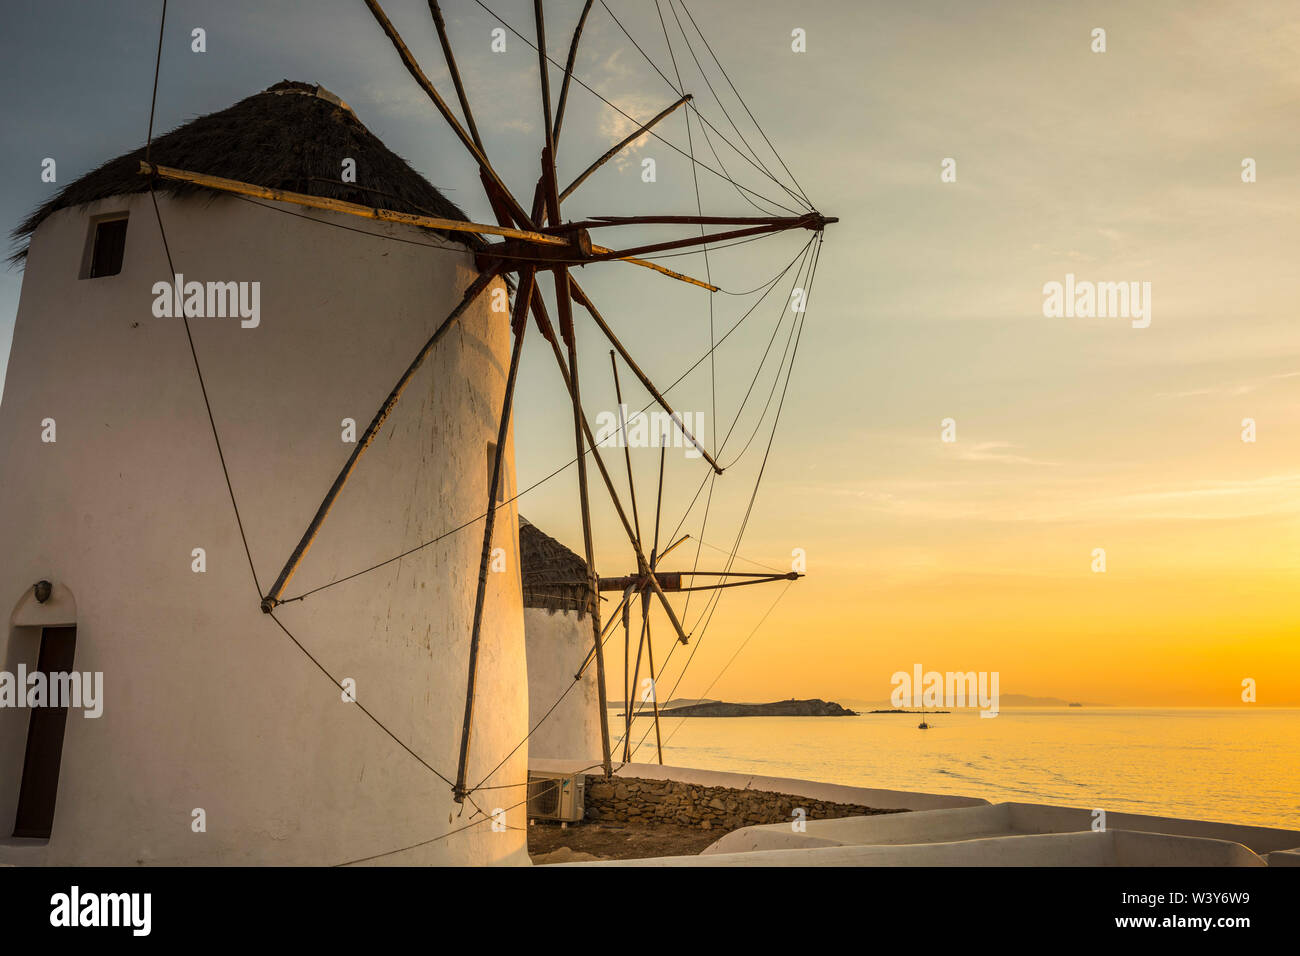 Les moulins à vent de Kato Mili, la ville de Mykonos, Mykonos, Cyclades, Grèce Banque D'Images